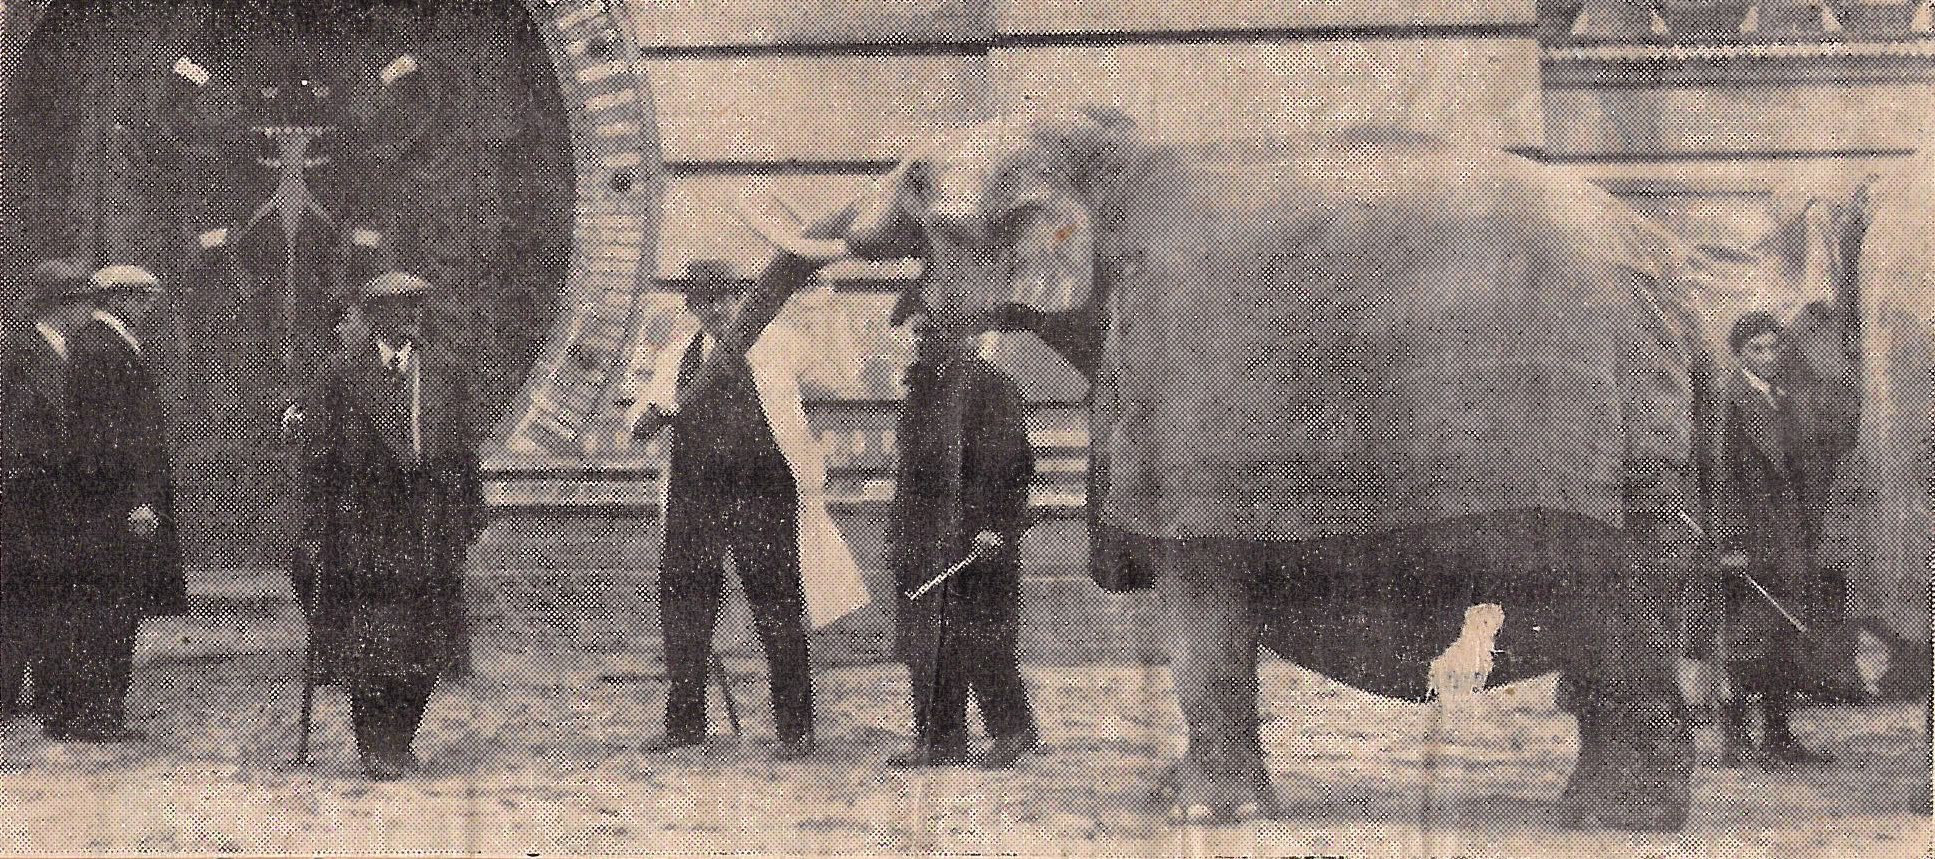 Zeitungsausschnitt. Foto: Mann in weißem Kittel und mit Hut hält Rüsselspitze eines stehenden Elefanten mit Decke auf dem Rücken. Sechs weitere Personen mit Hüten und Gehstöcken oder Gerten stehen dabei.